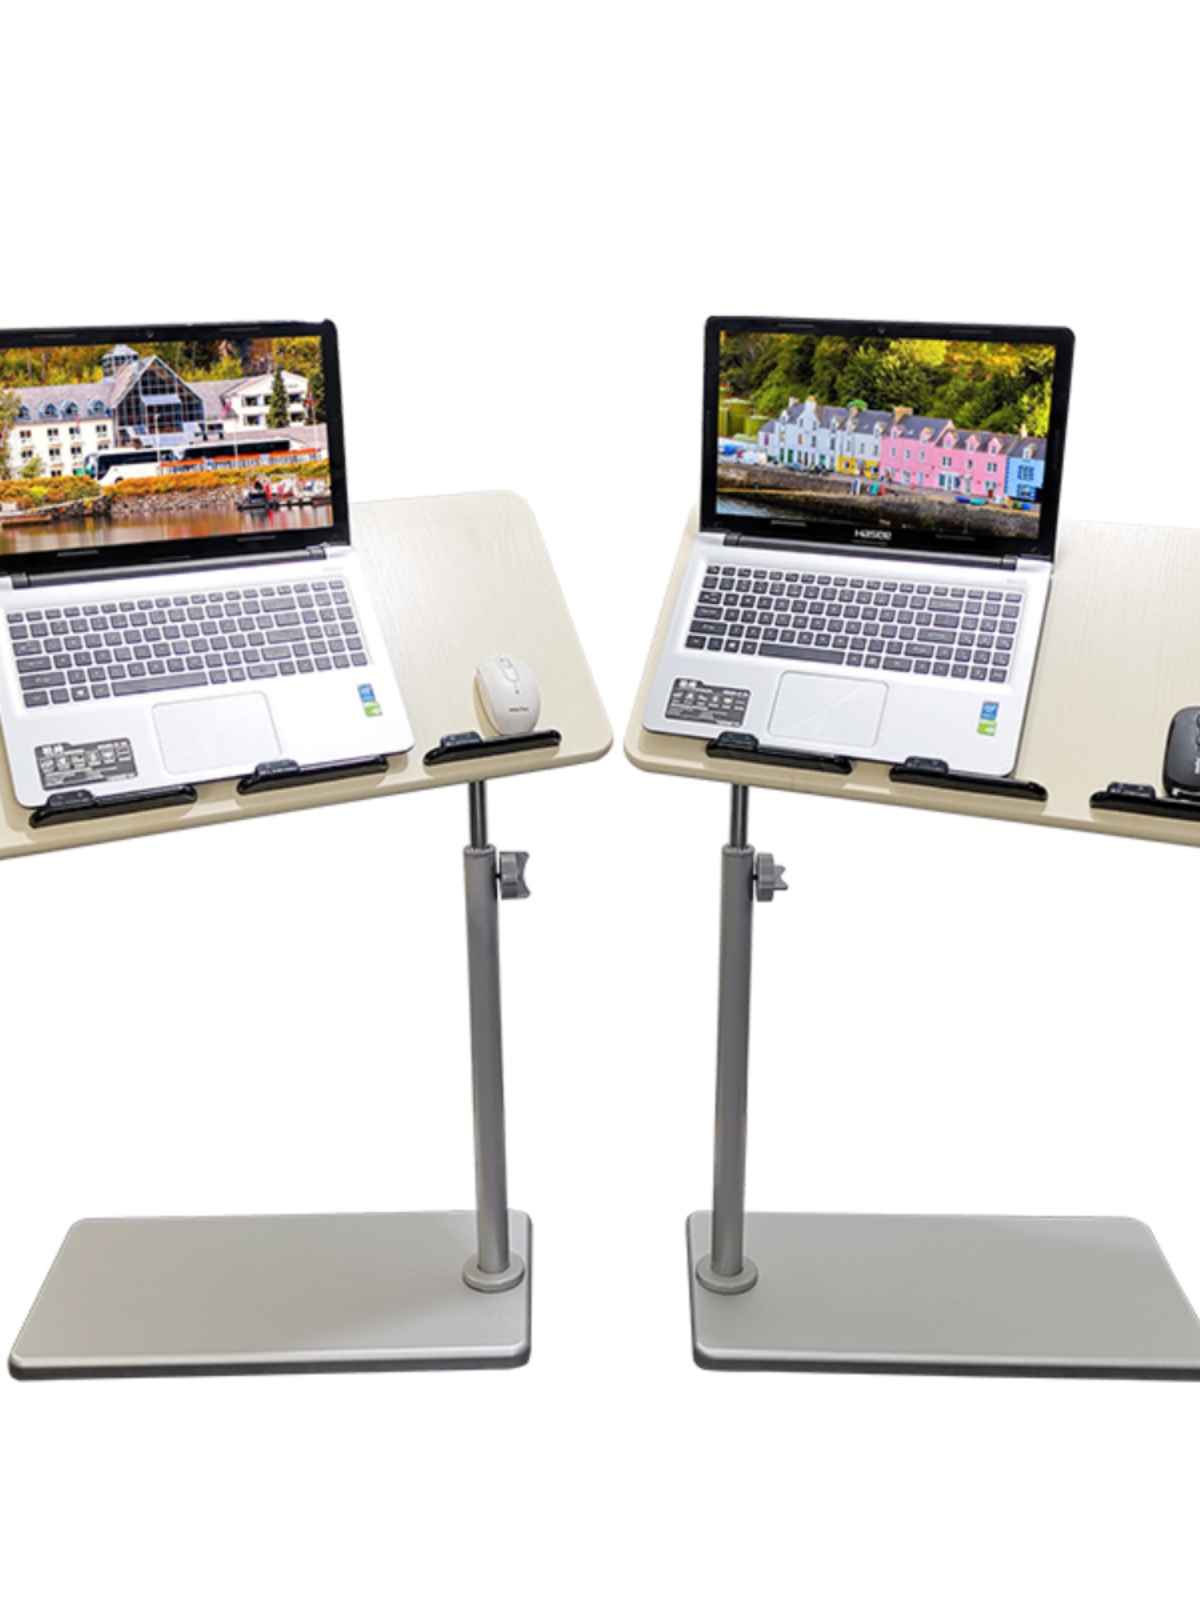 物聯可移動床邊桌 筆記本電腦桌 簡易摺疊桌 懶人升降床上看書寫字桌